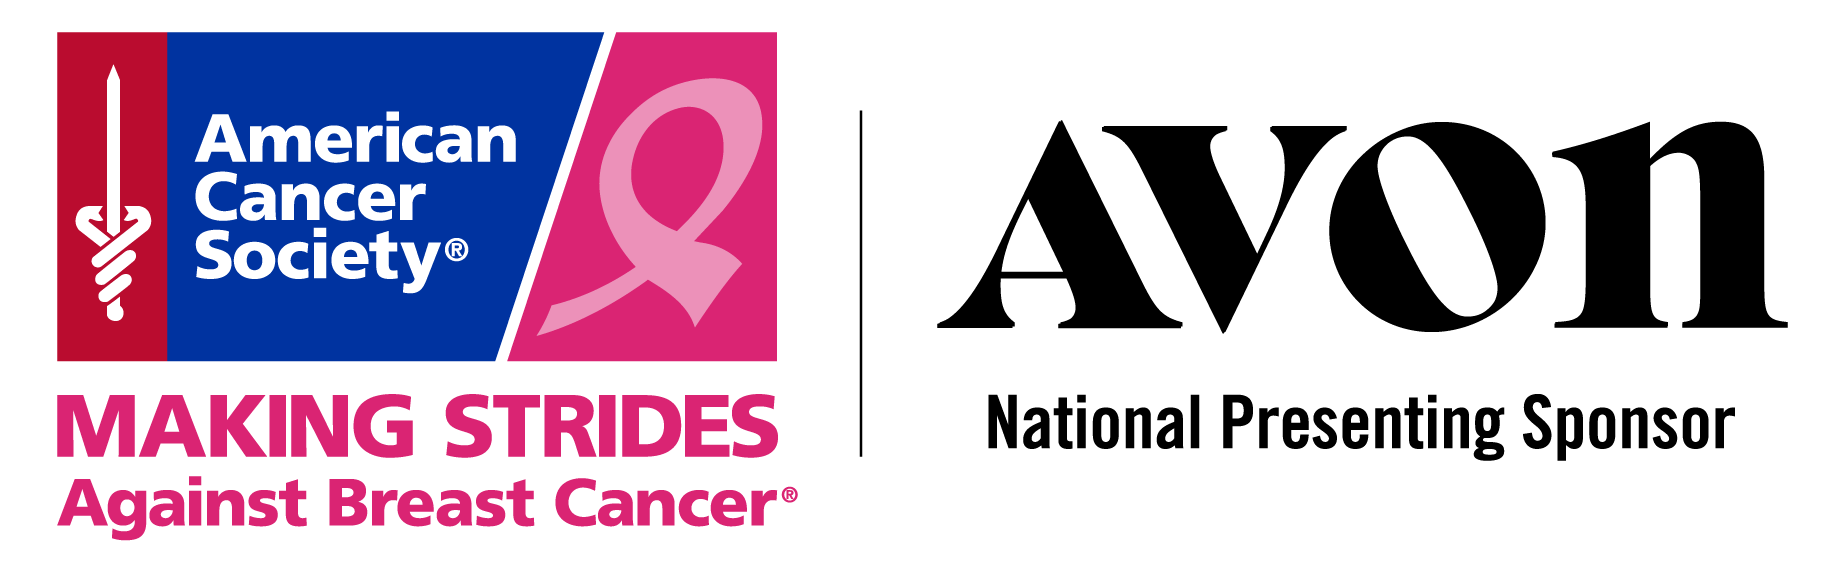 Avon Breast Cancer